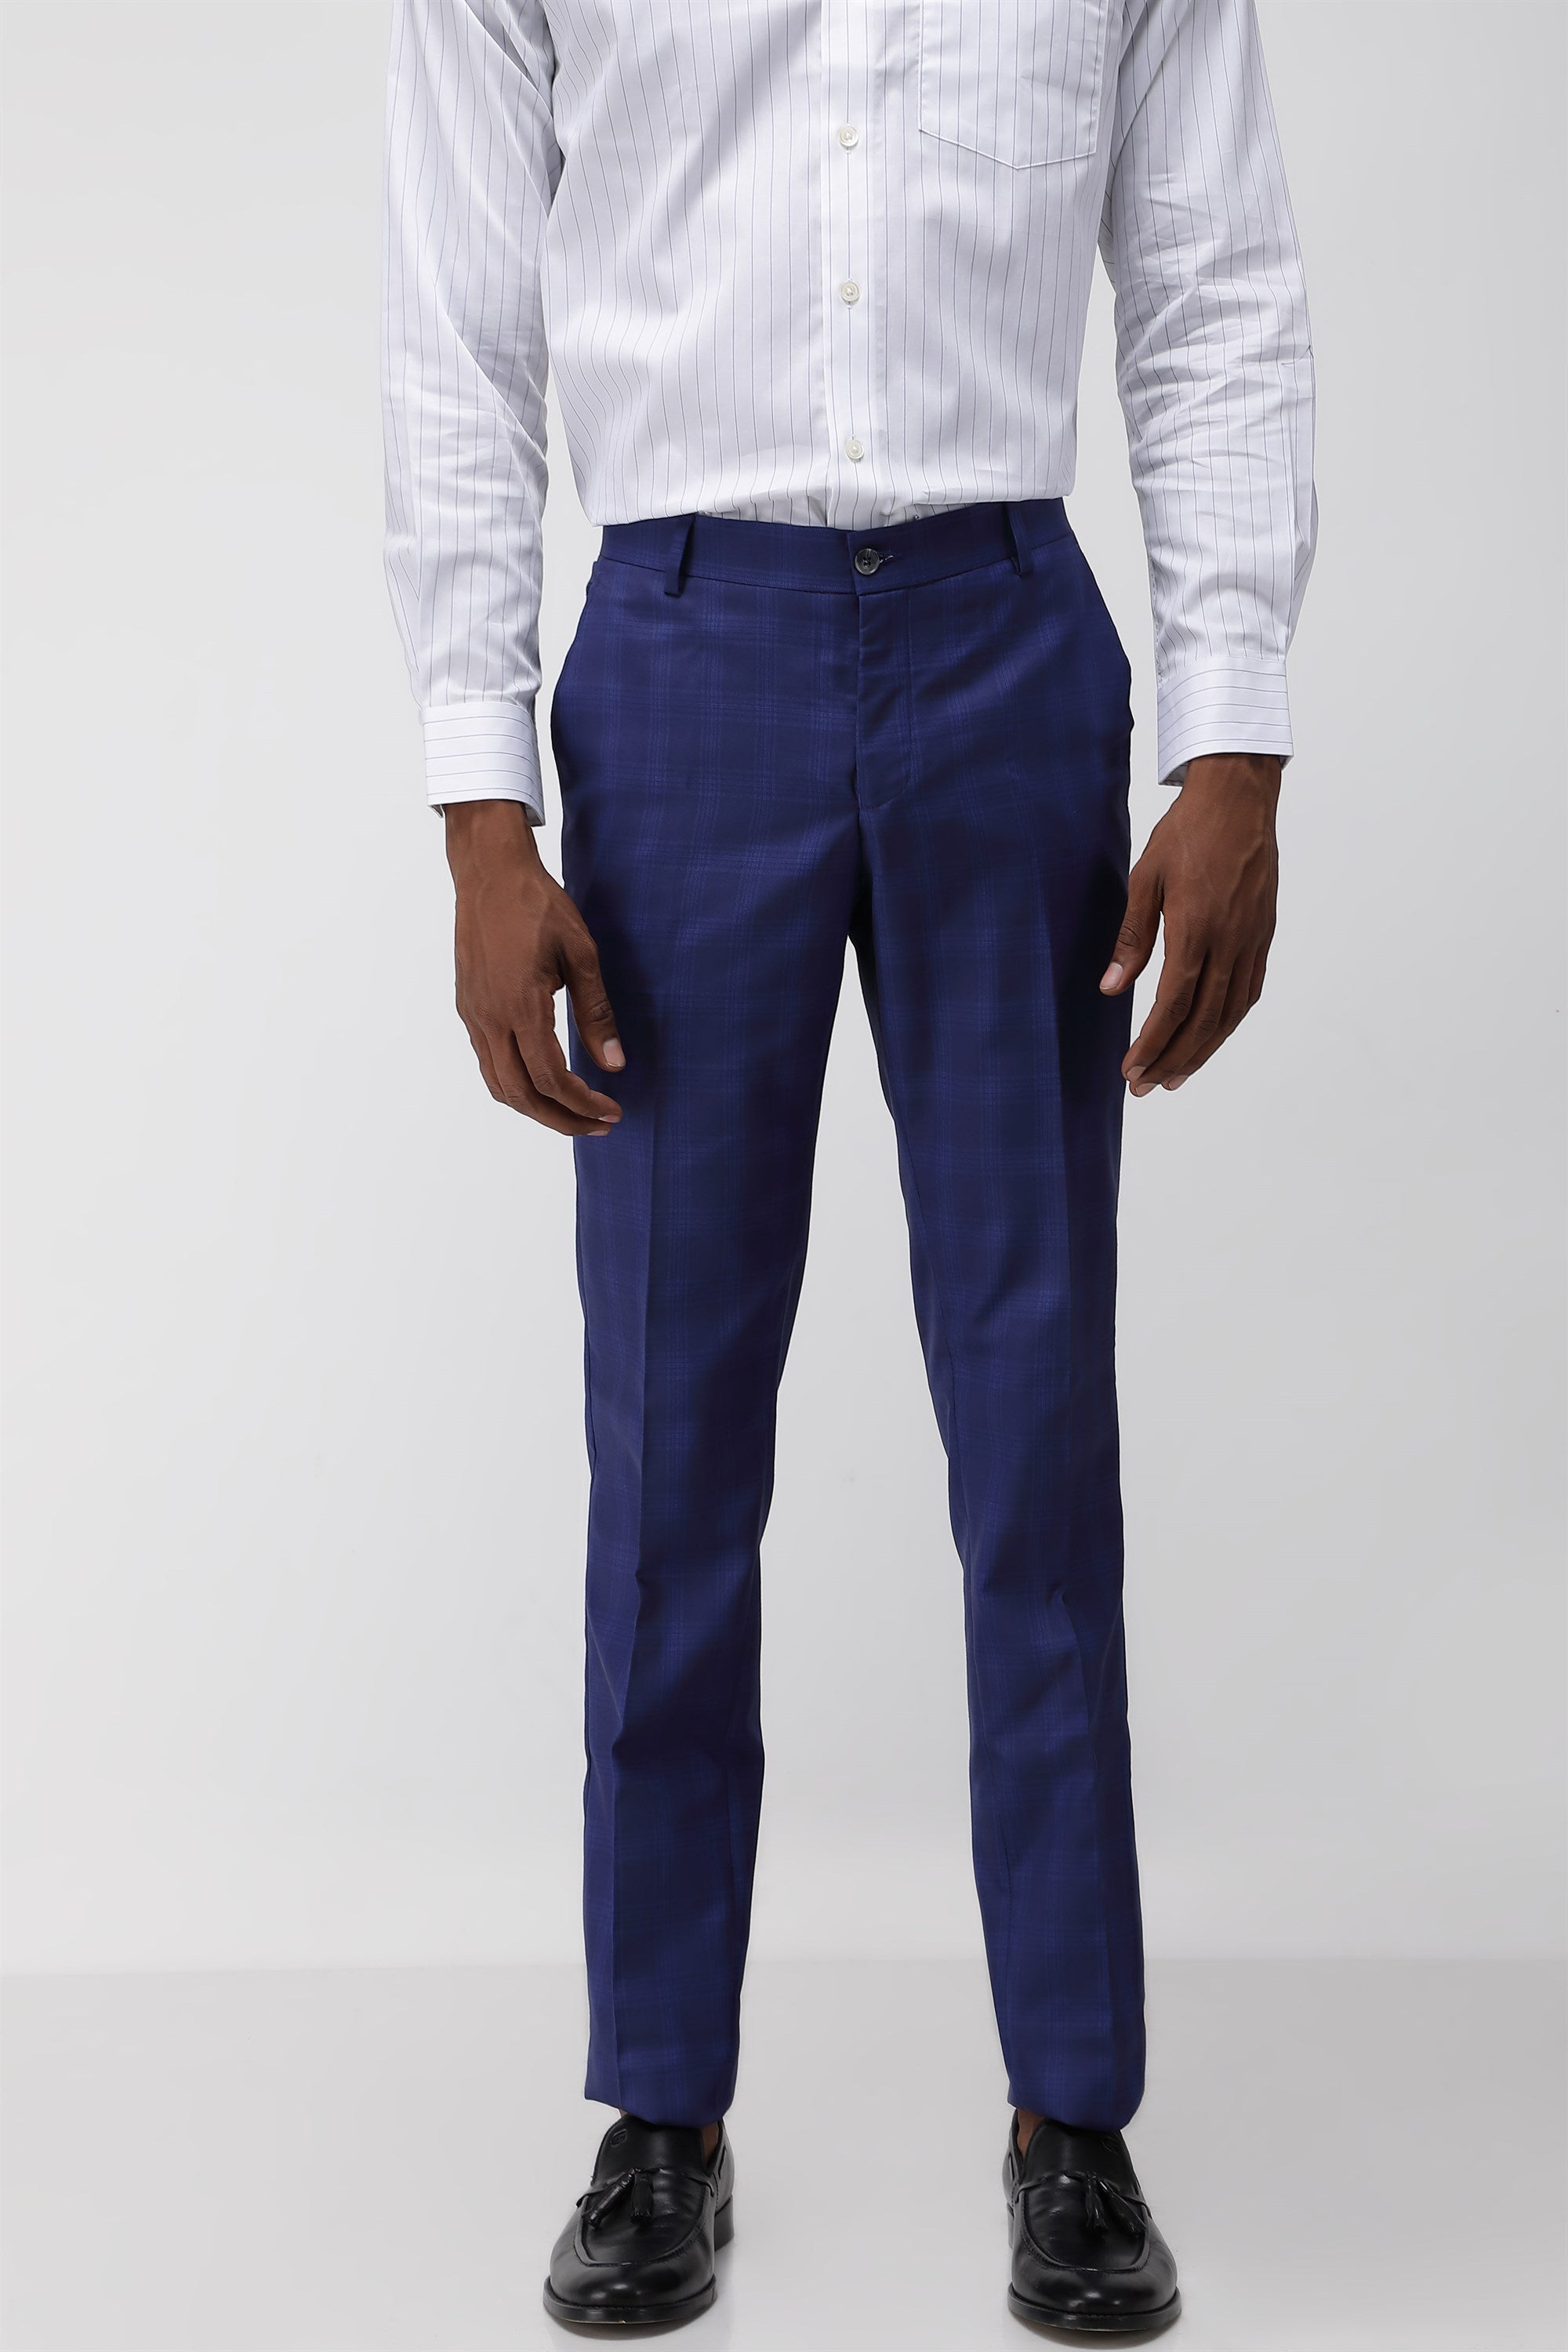 Beautiful Blue Pants - The Suit Spot